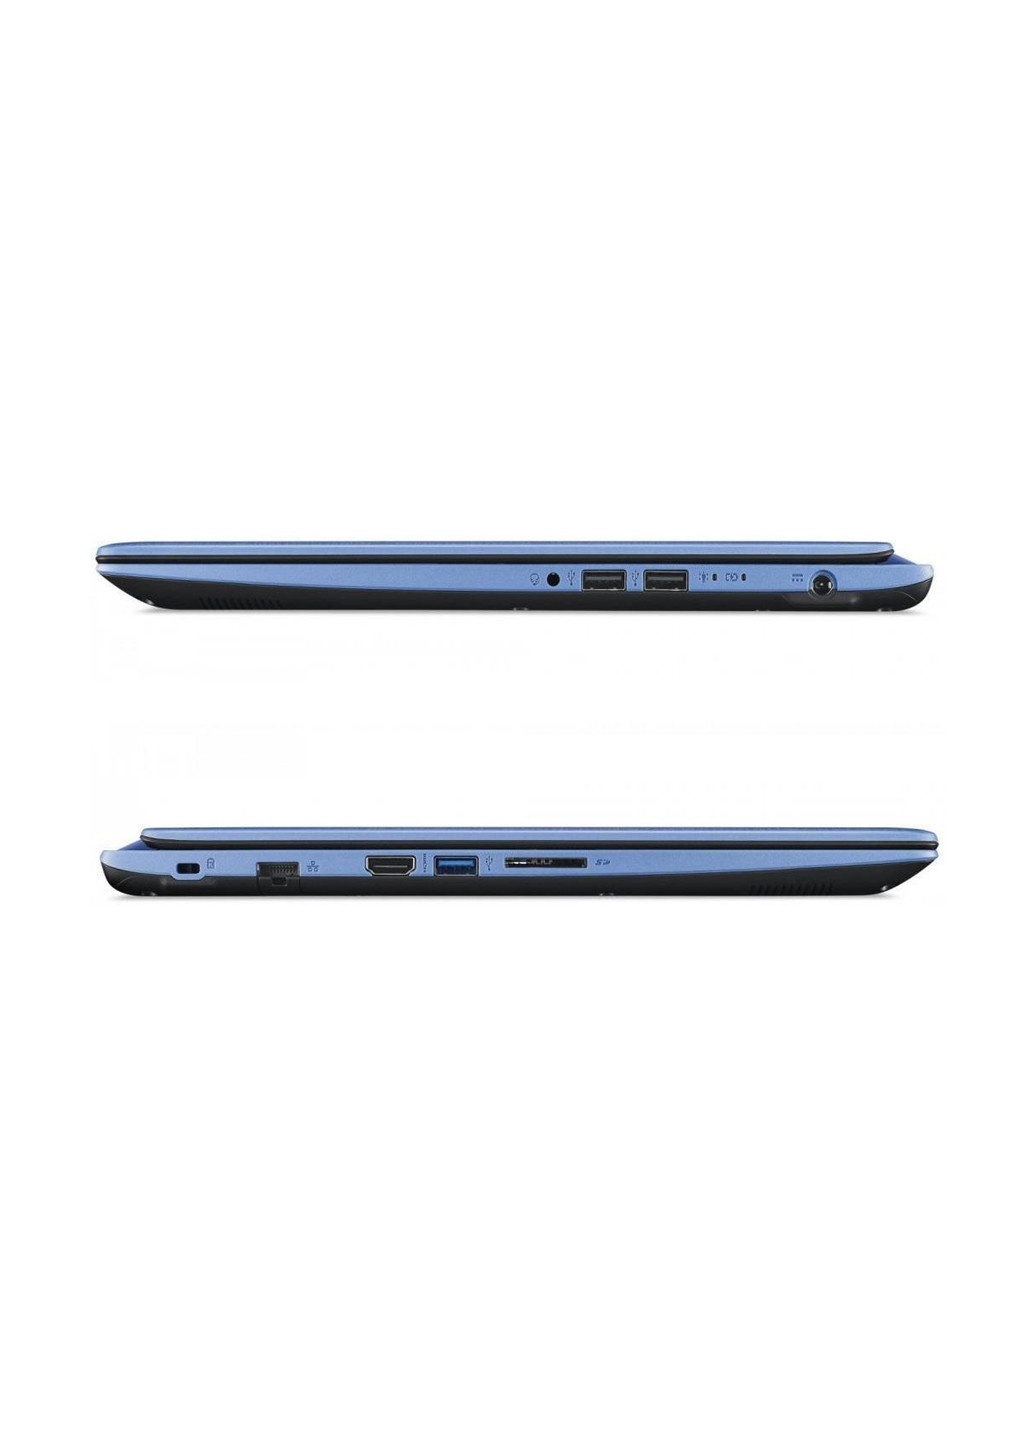 Ноутбук Acer aspire 3 a315-33 (nx.h63eu.002) blue (134076195)